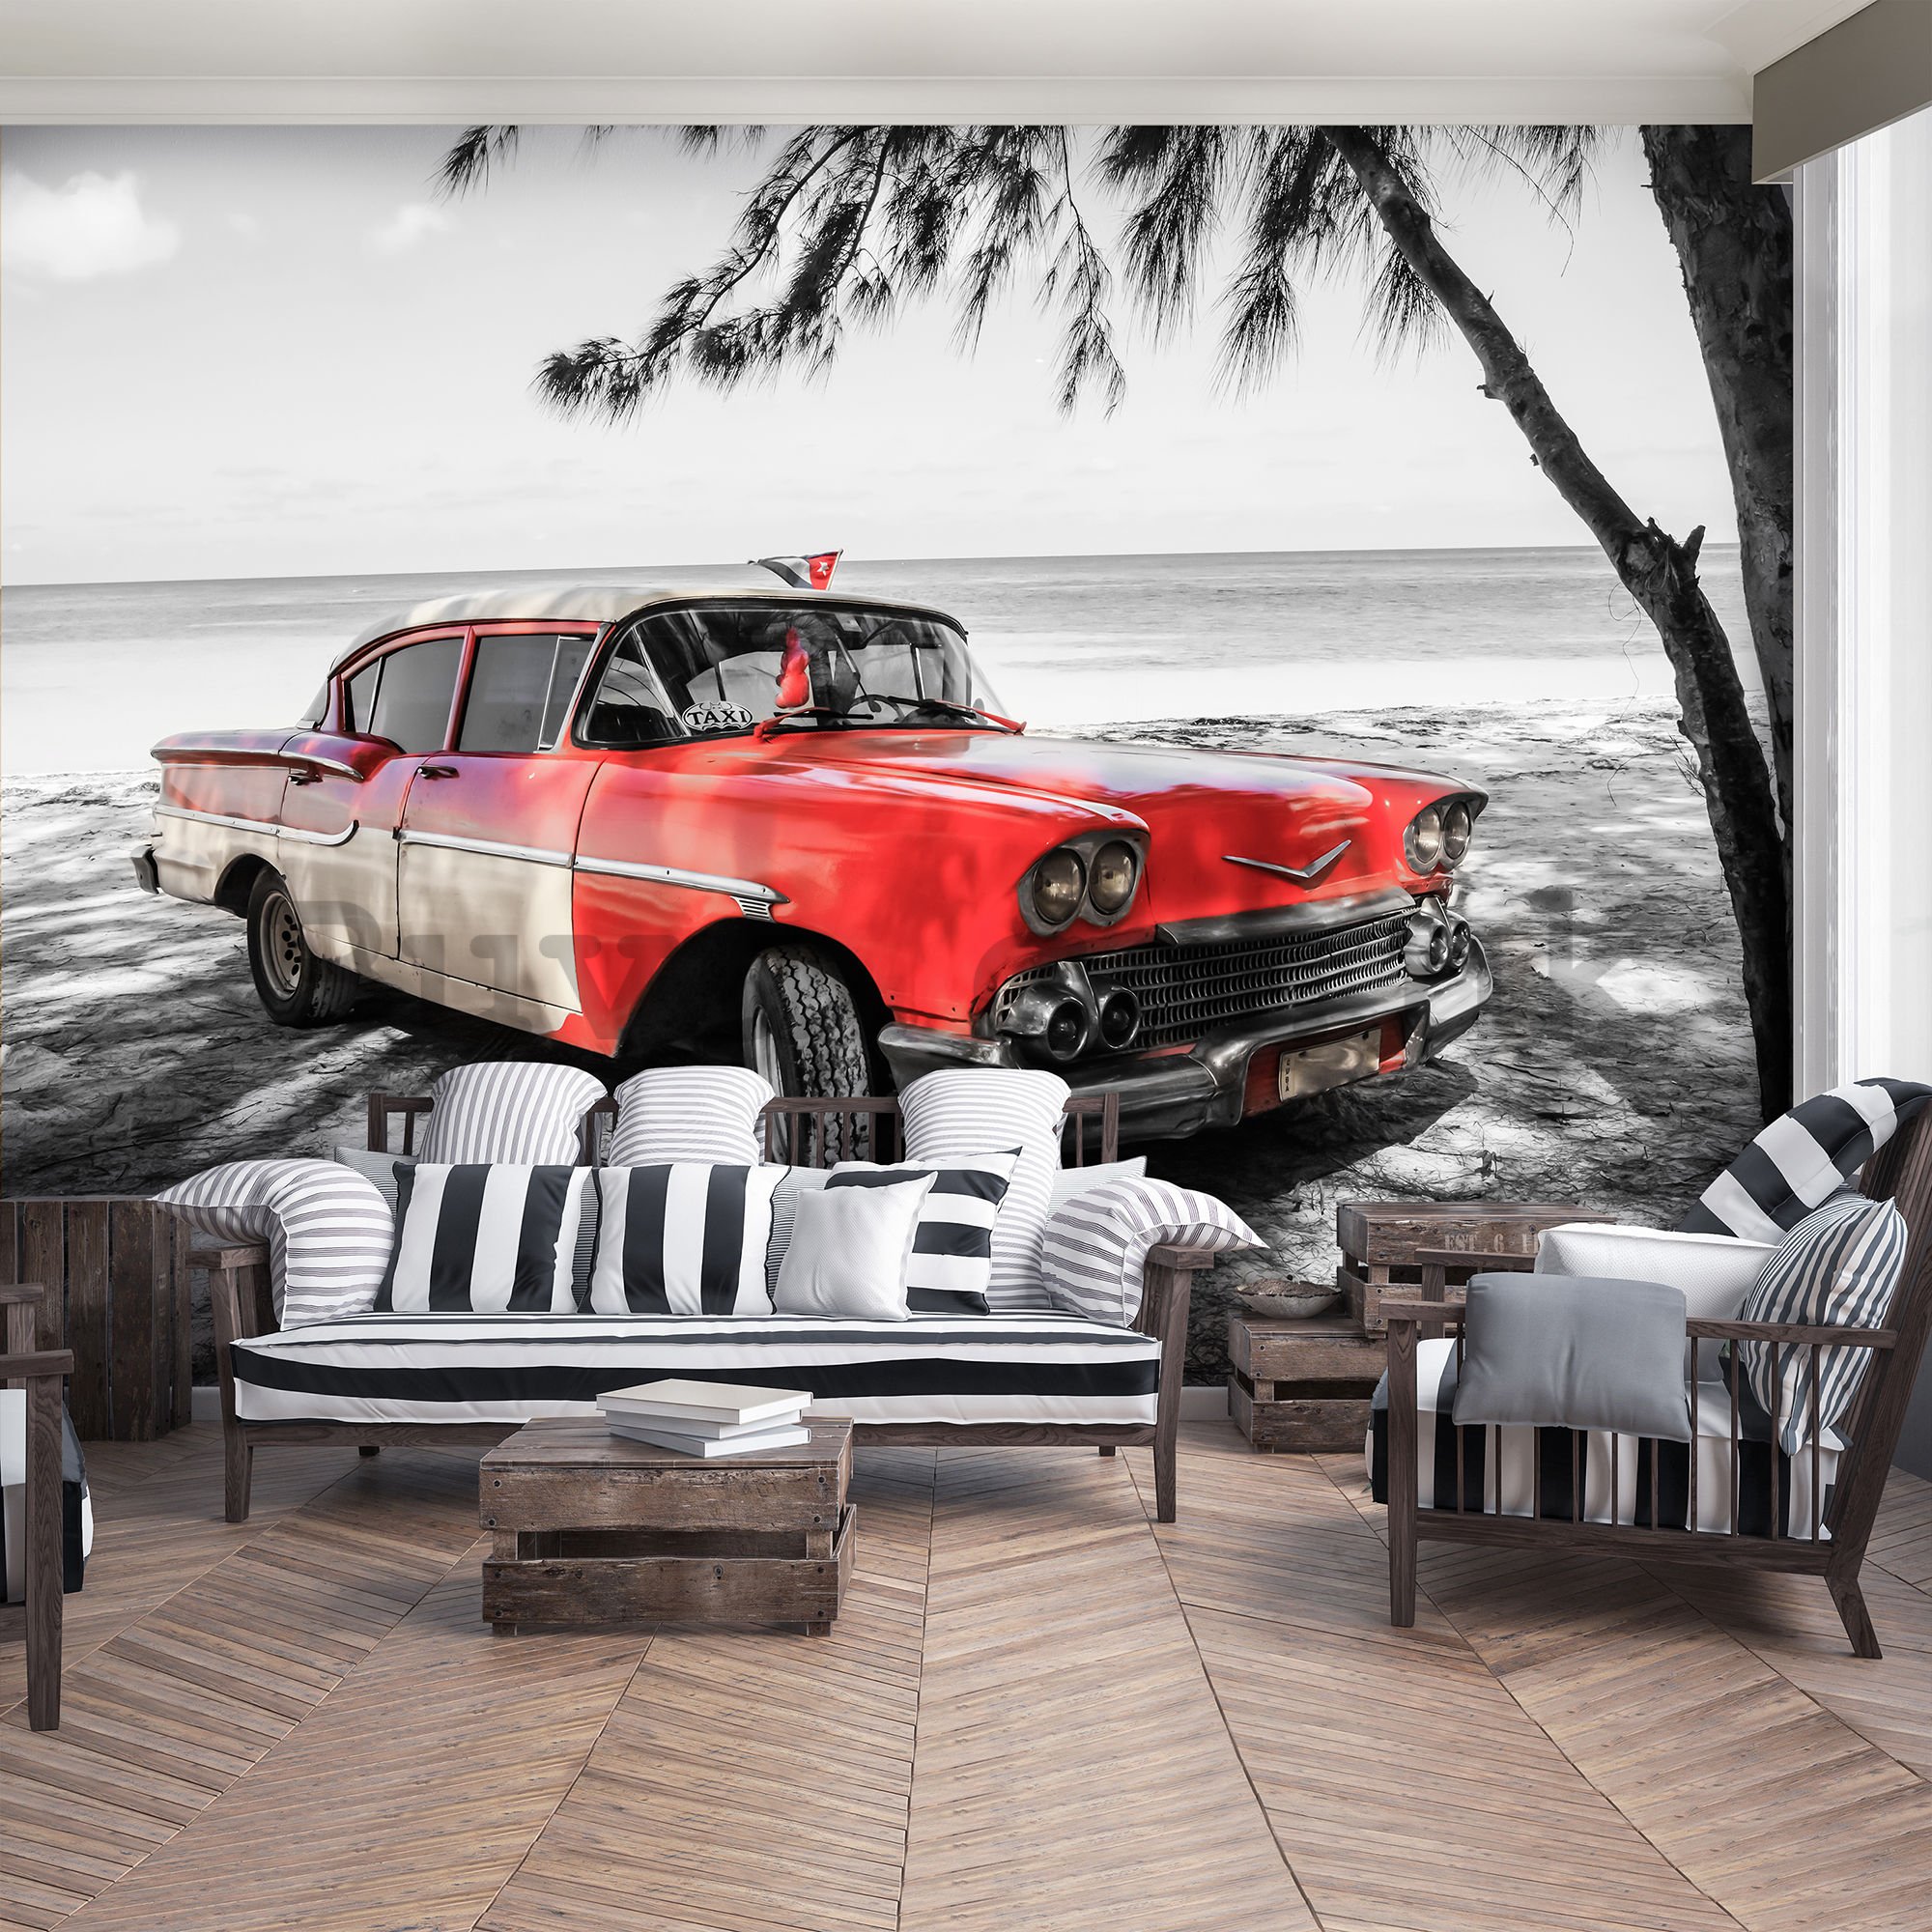 Wall mural vlies: Cuba red car by the sea - 184x254 cm